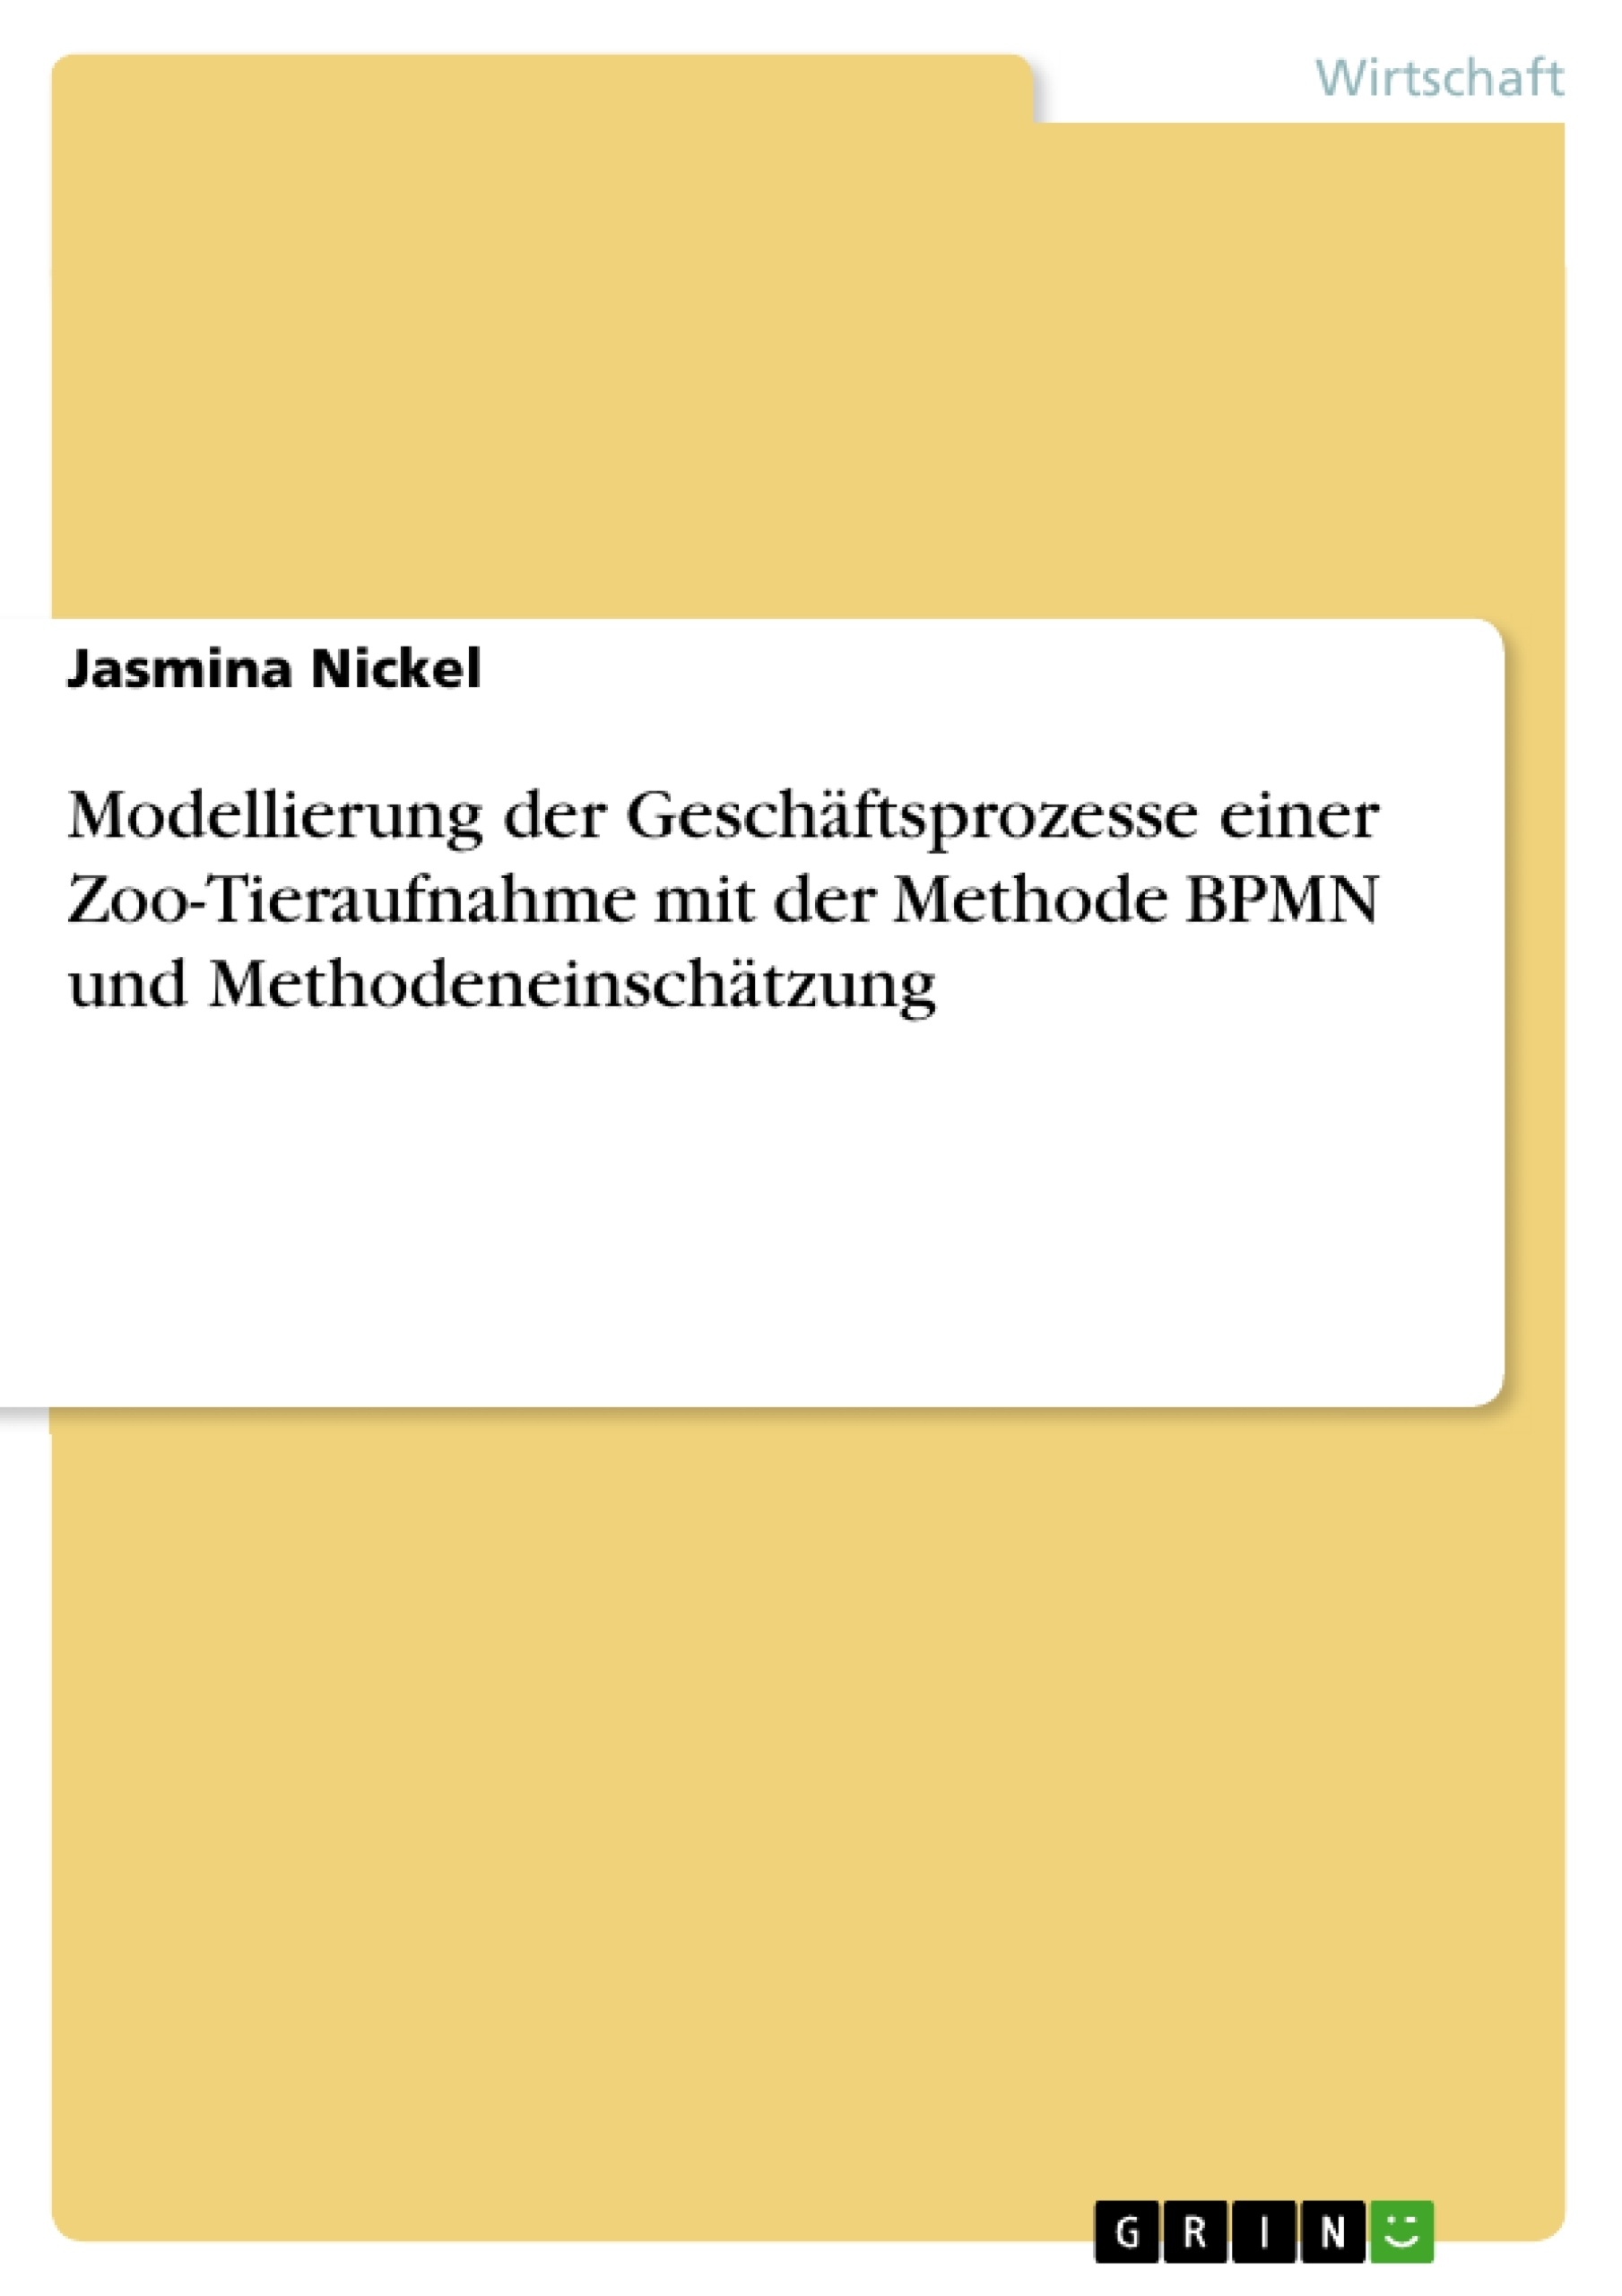 Título: Modellierung der Geschäftsprozesse einer Zoo-Tieraufnahme mit der Methode BPMN und Methodeneinschätzung